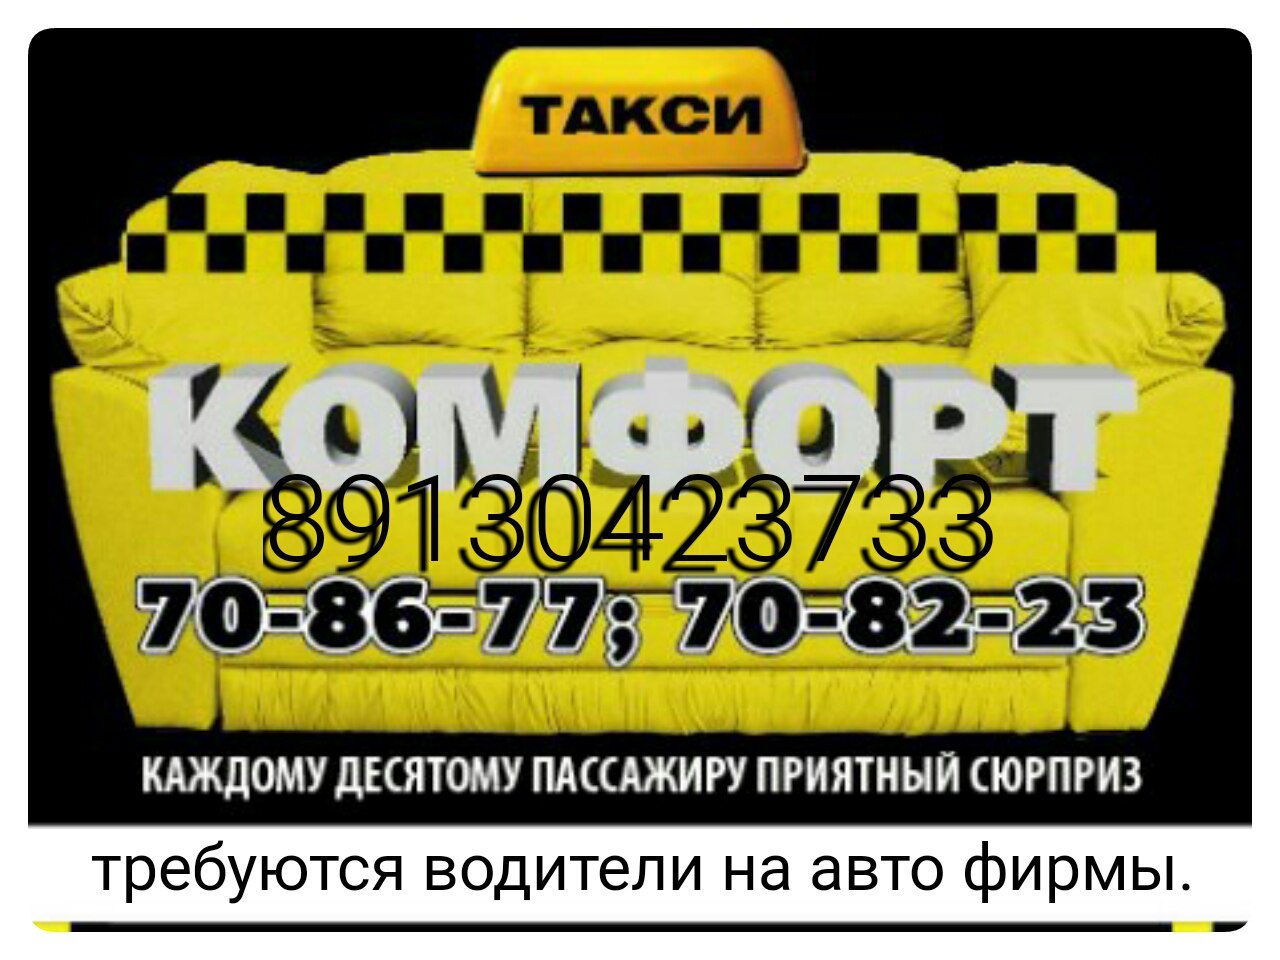 Такси назарова номера телефонов